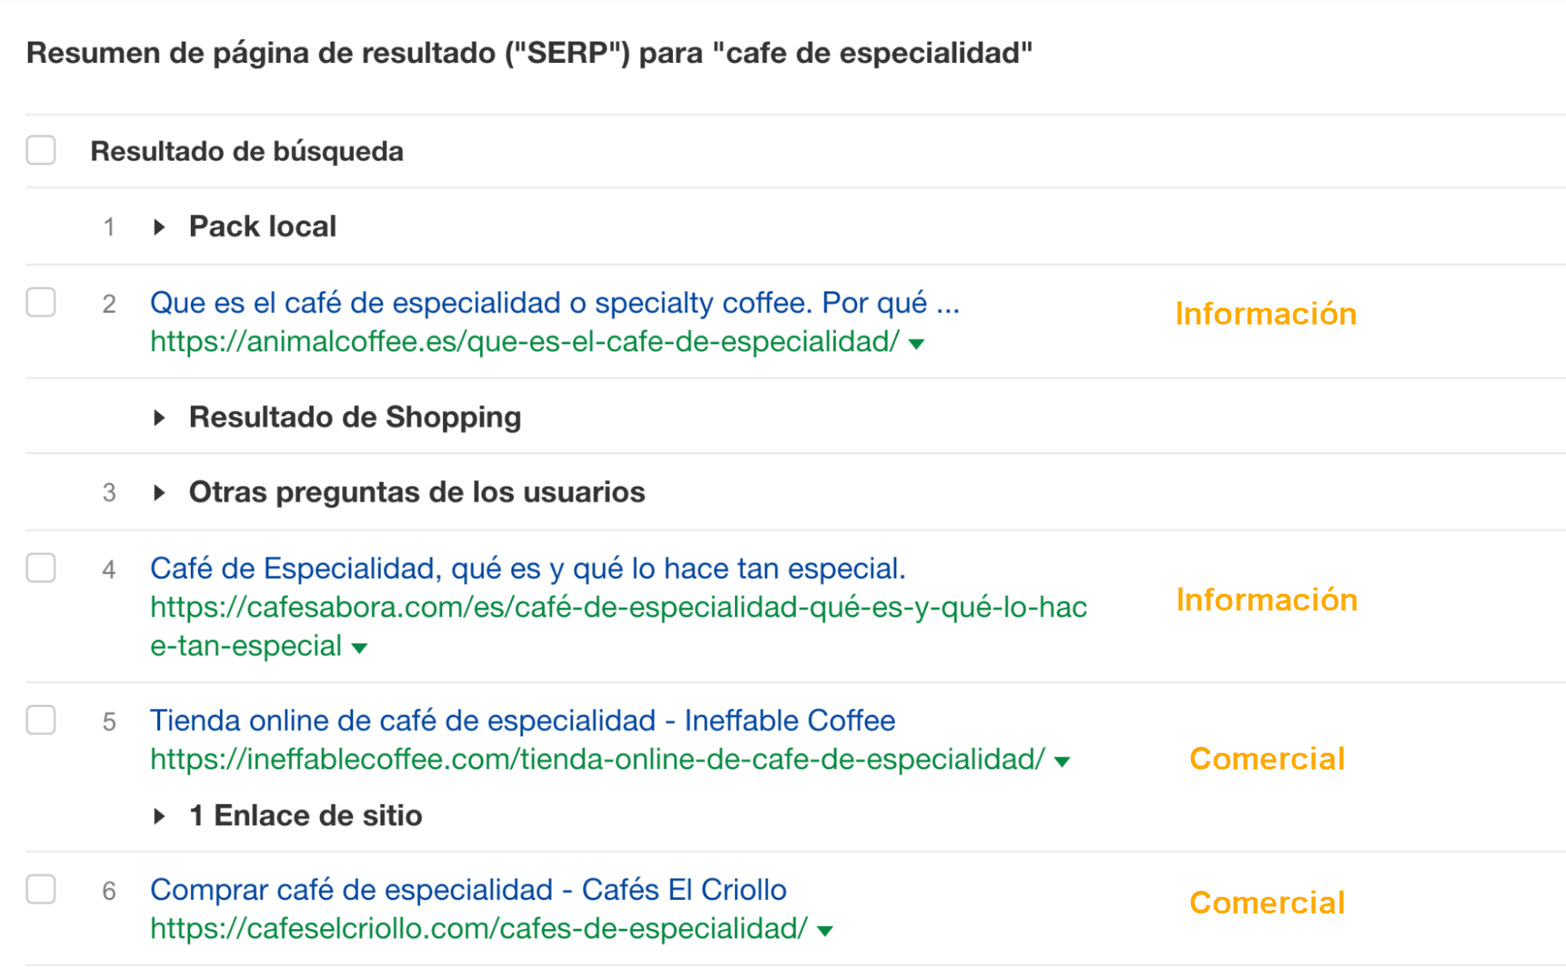 Resumen de páginas de resultados para "café de especialidad"